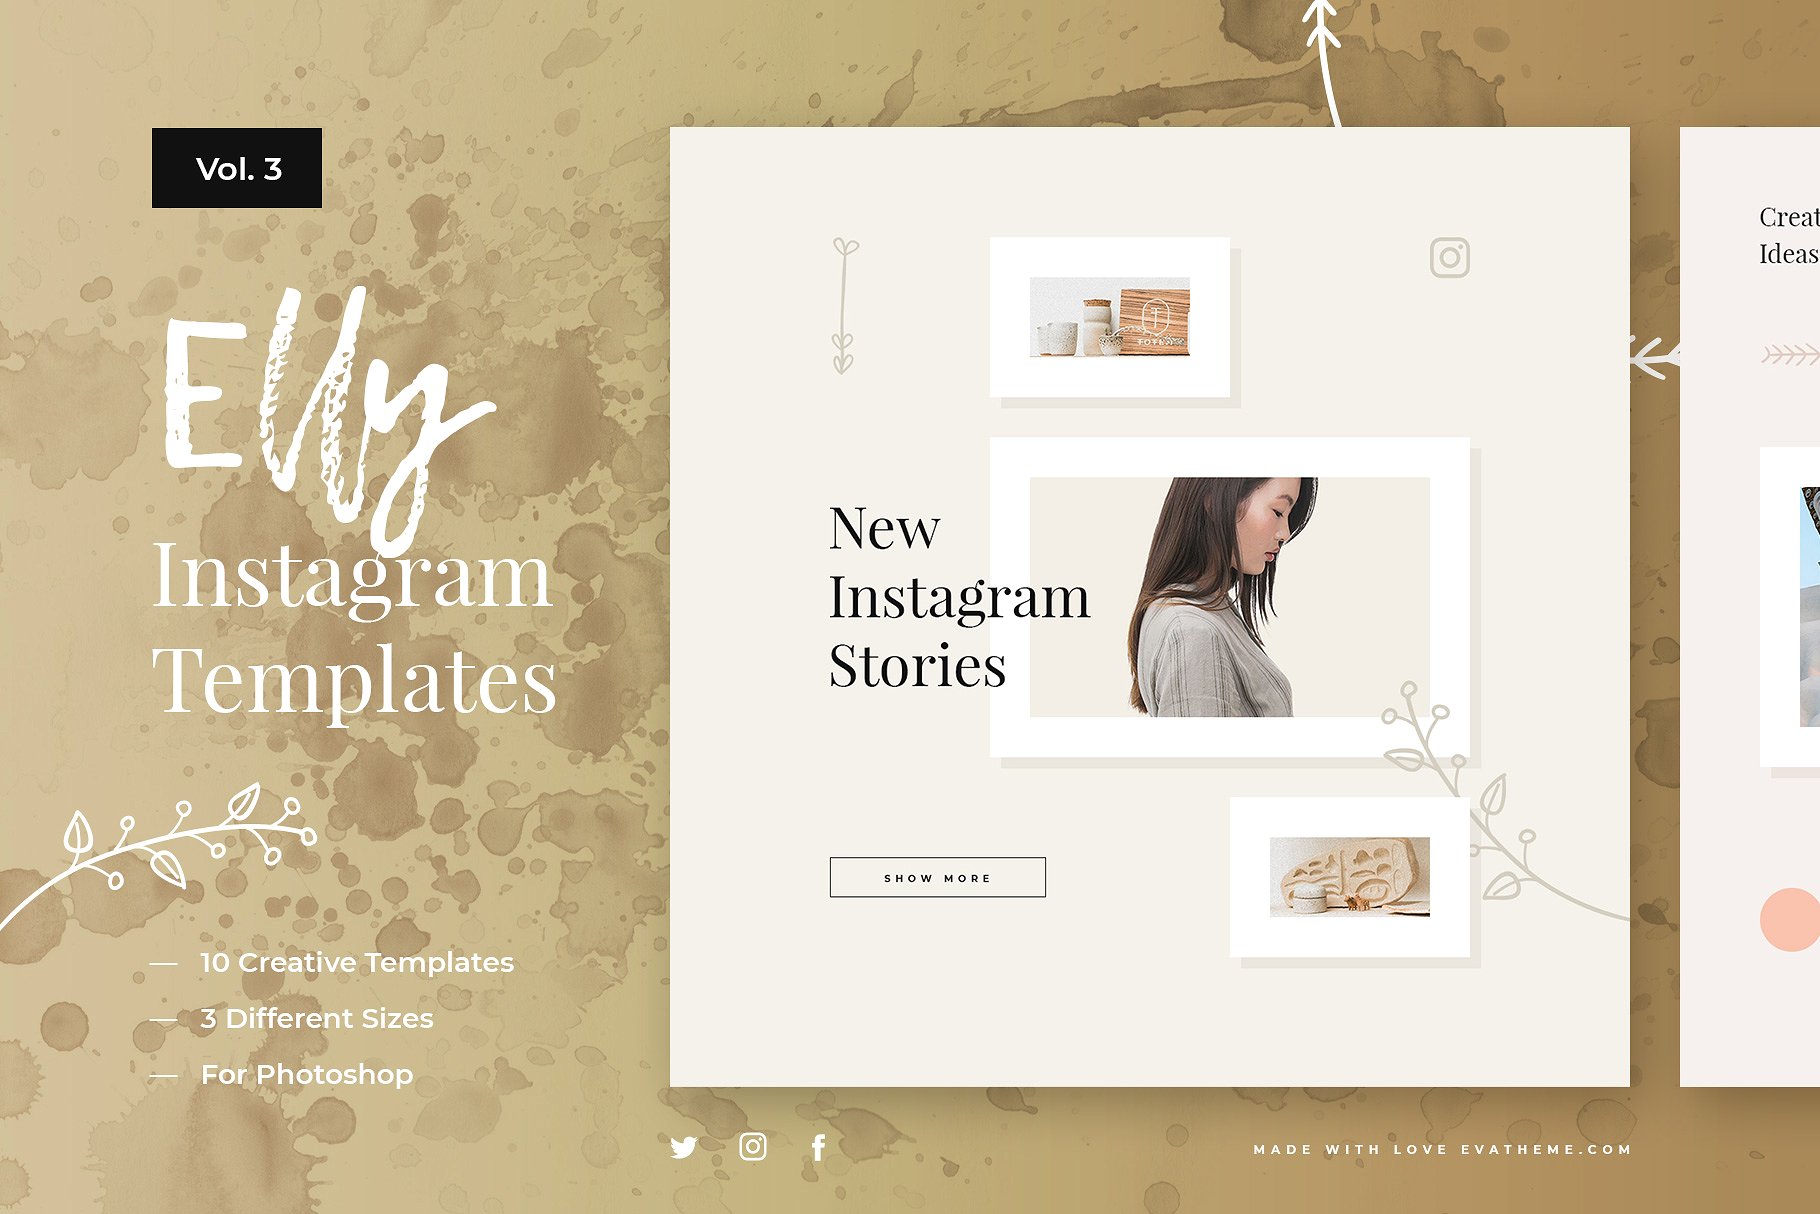 创意社交媒体贴图模板蚂蚁素材精选合集 Elly Instagram Template Bundle插图(3)